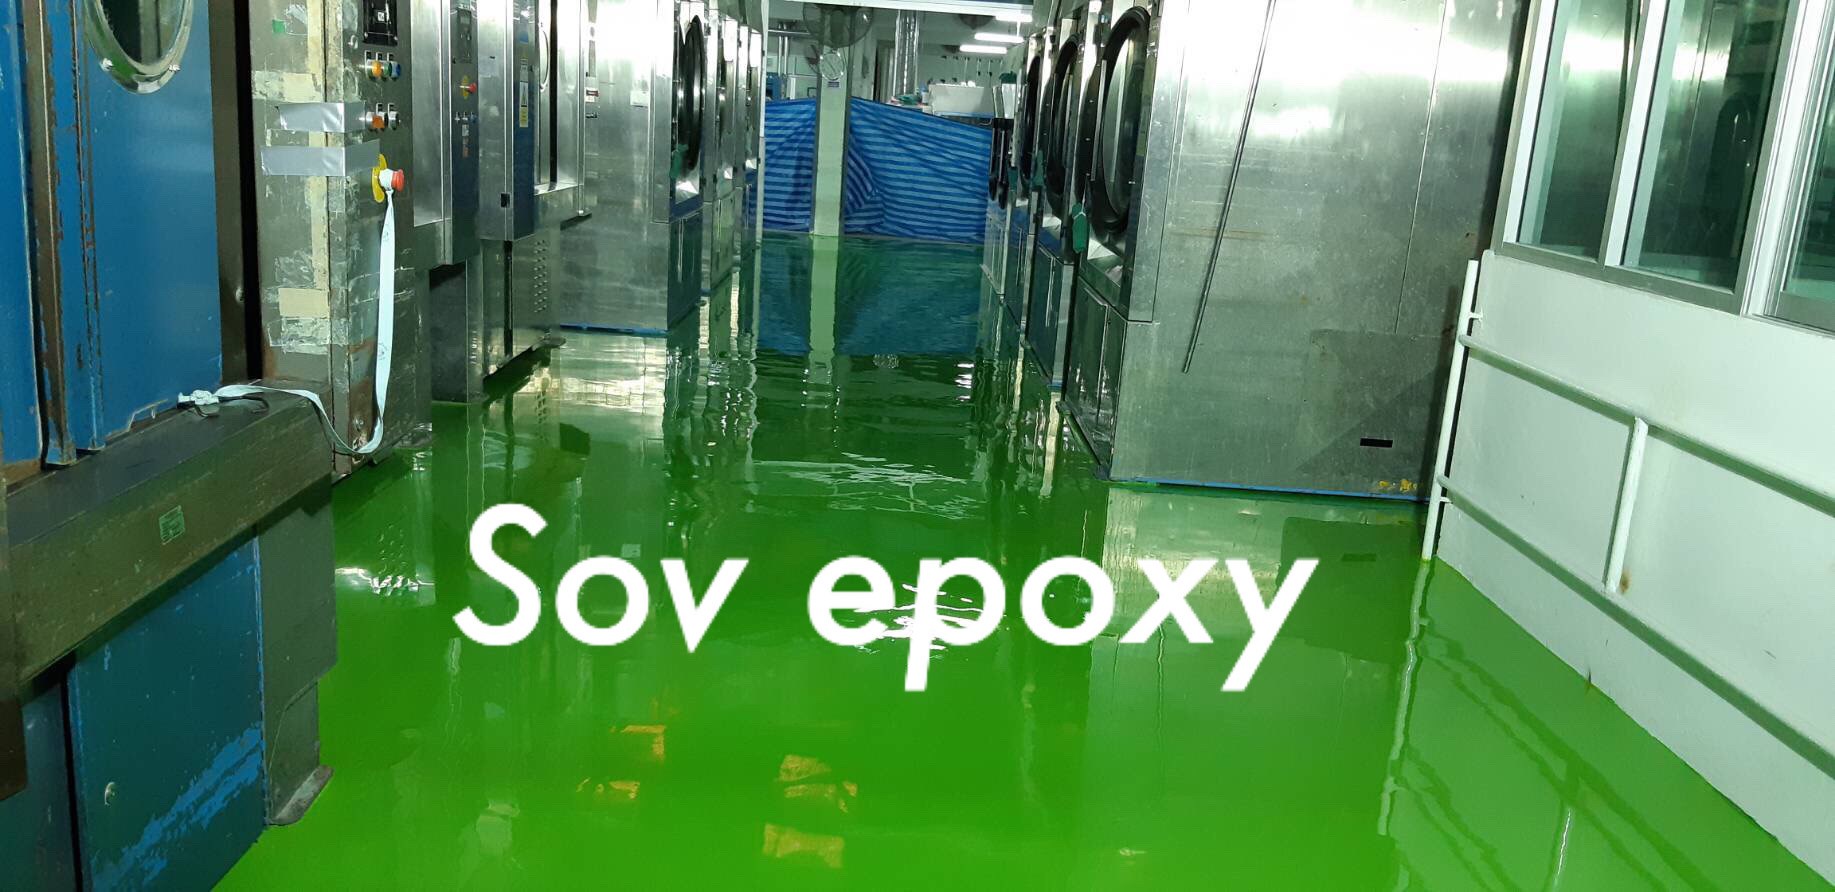 Sov Epoxy ทำพื้นอีพ็อกซี่ พื้นพียู พื้นโรงงาน พื้นสนามกีฬา 8